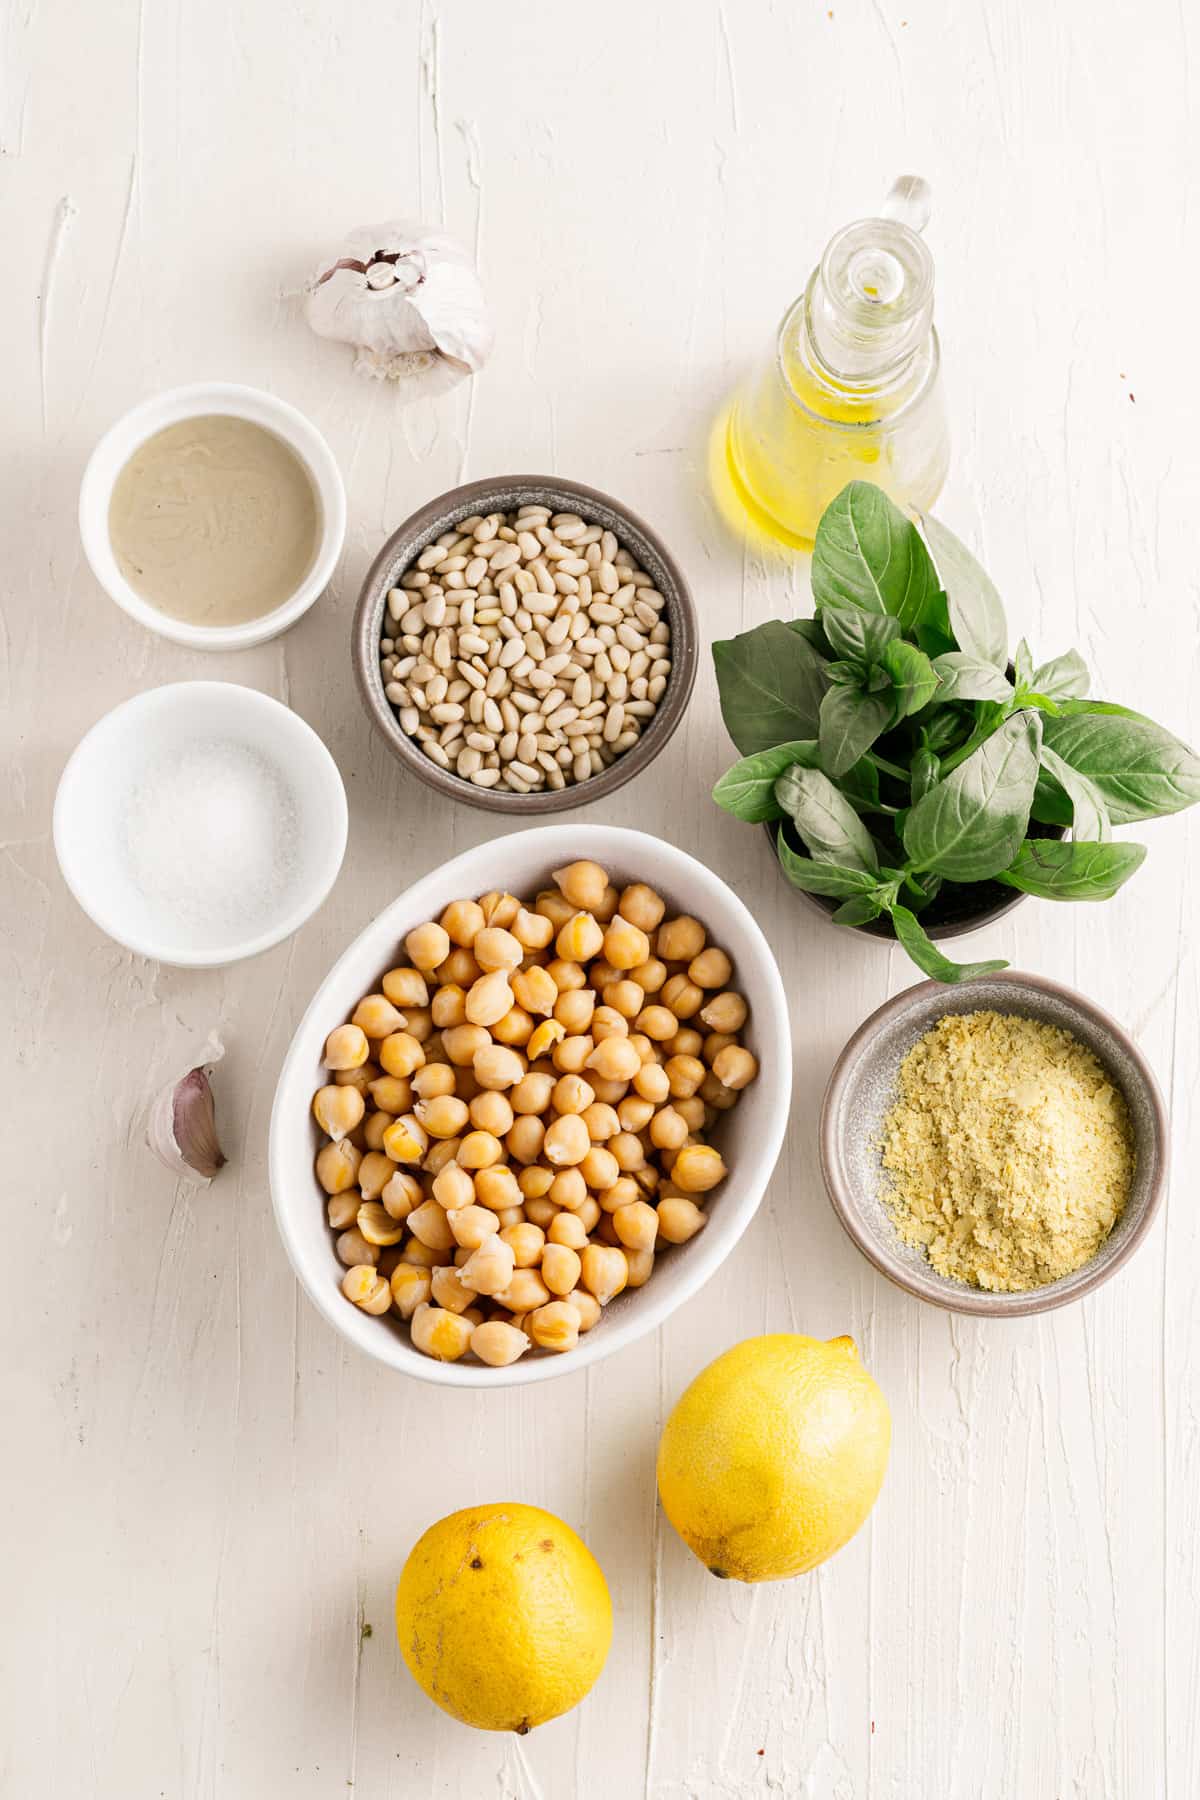 Hummus ingredients in separate bowls.